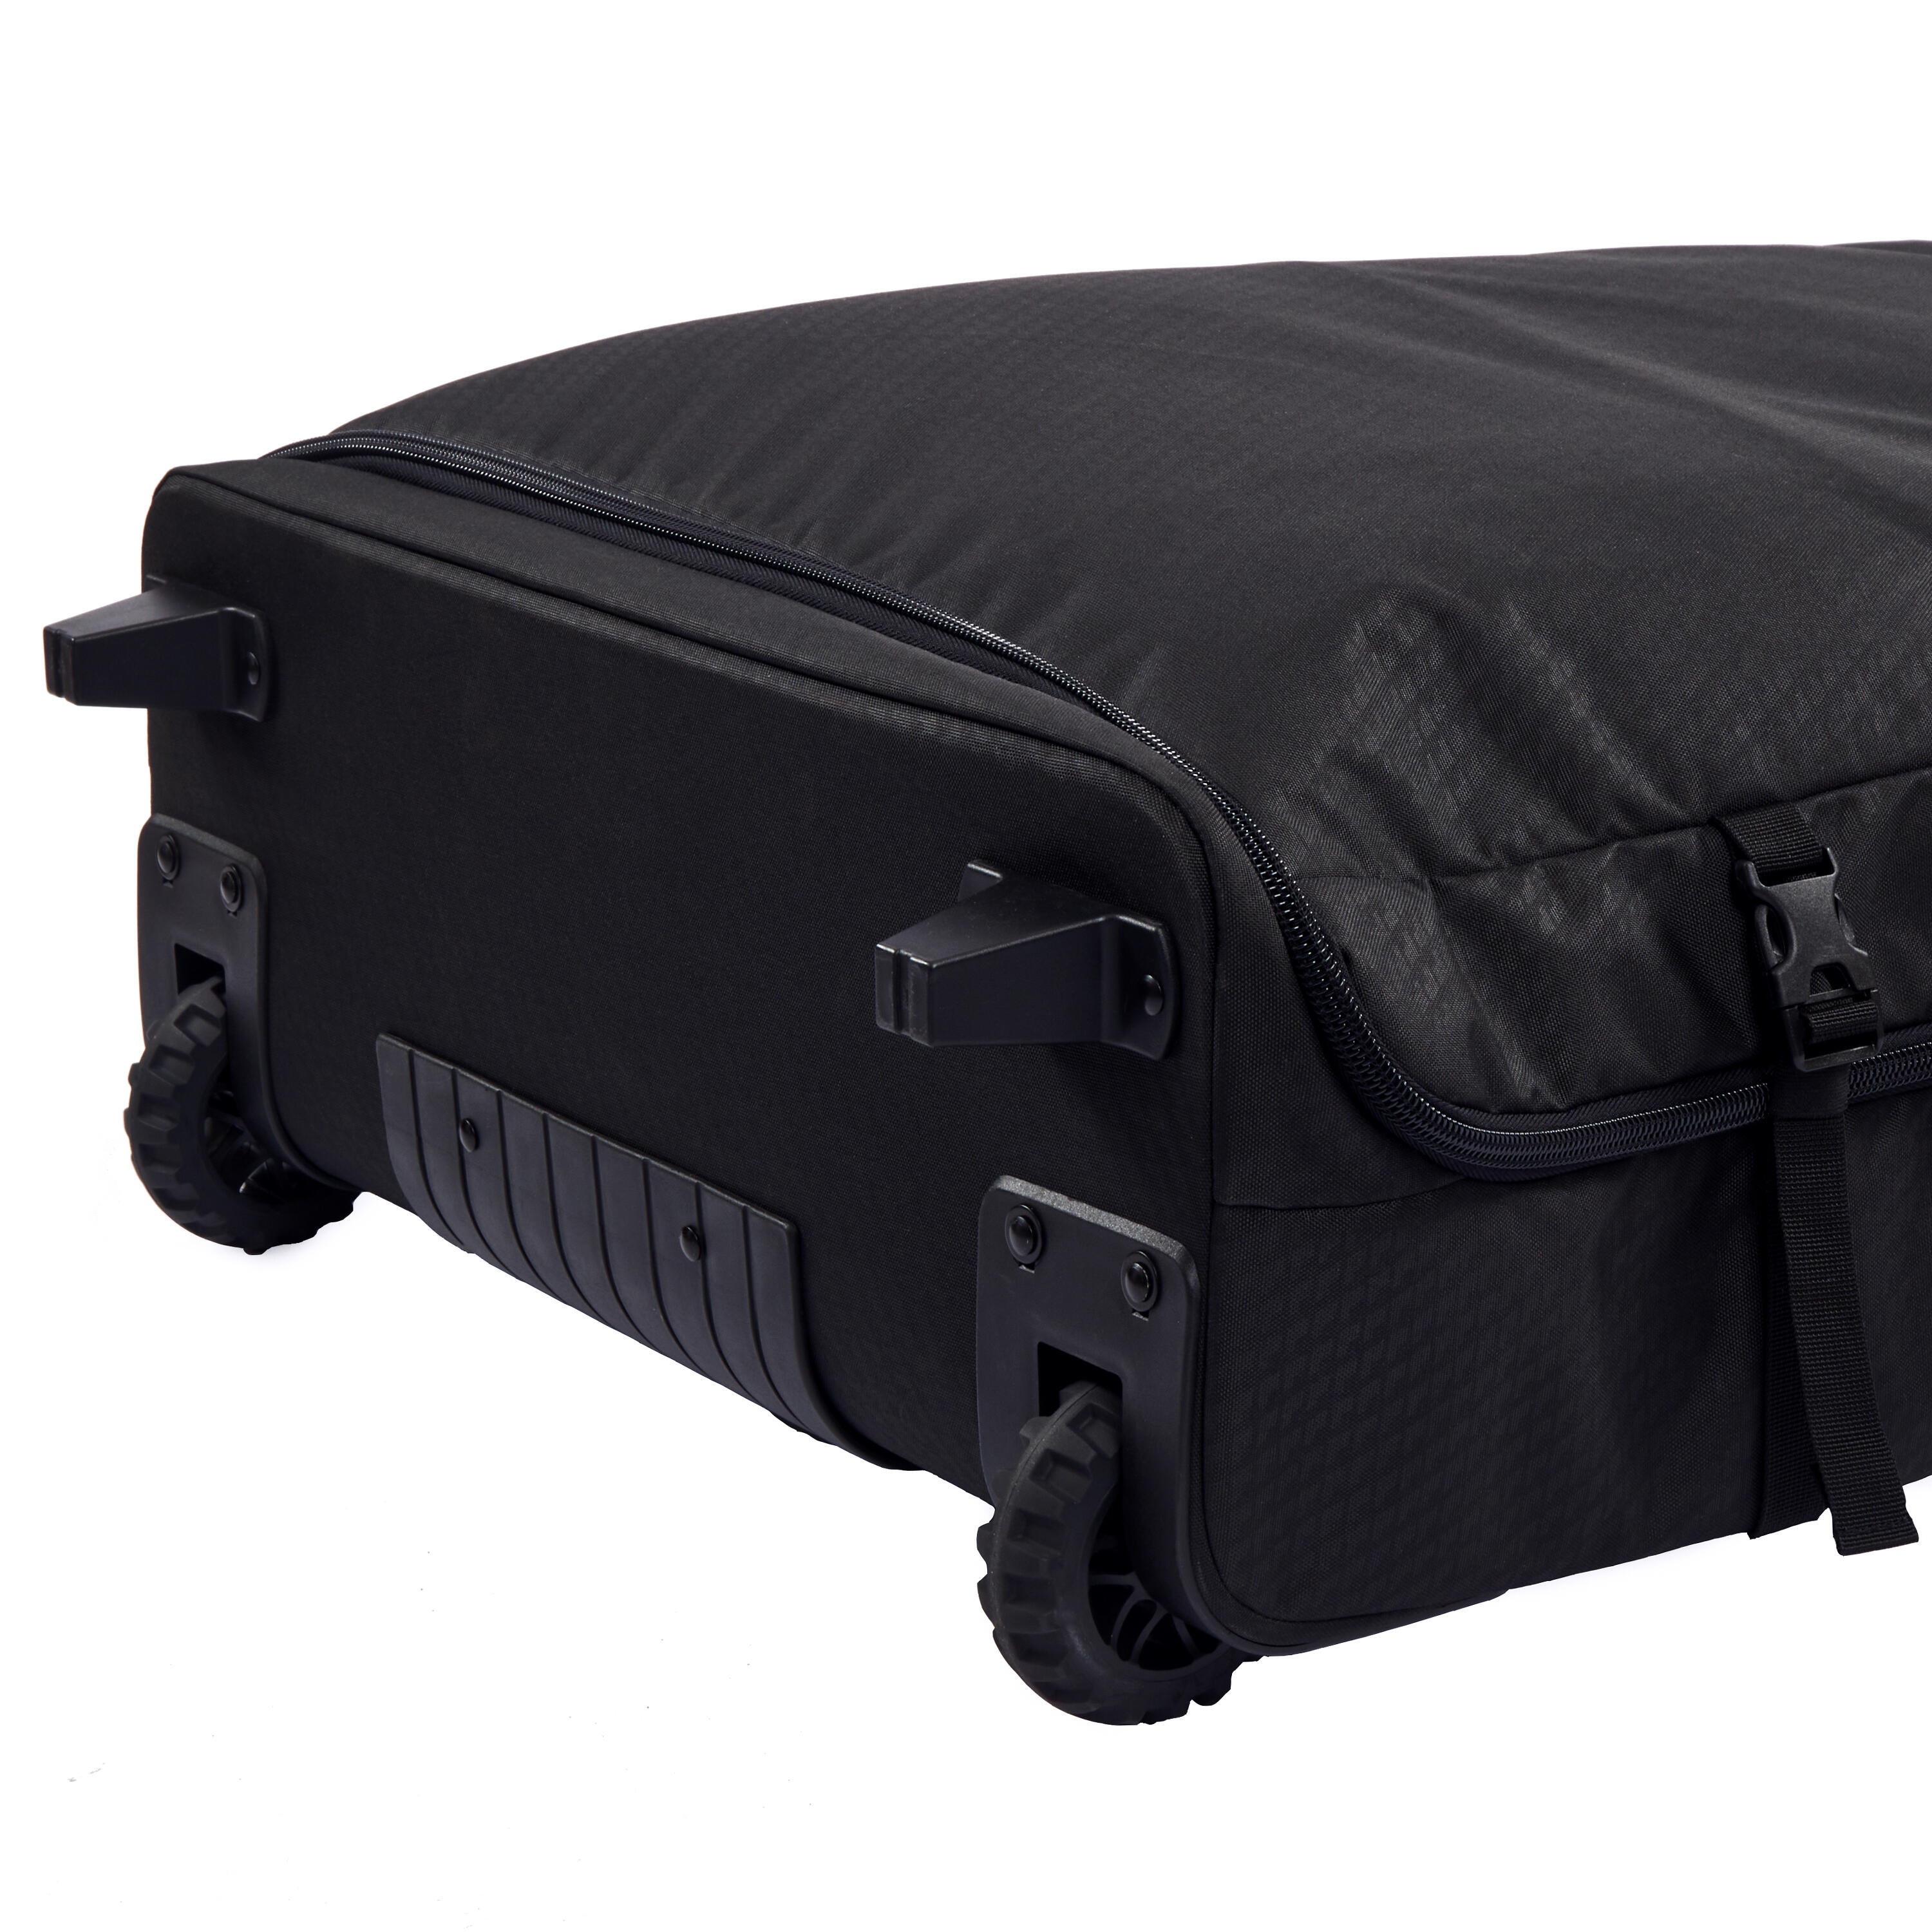 Bodyboard 900 trip trolley bag / wheels - black 6/10